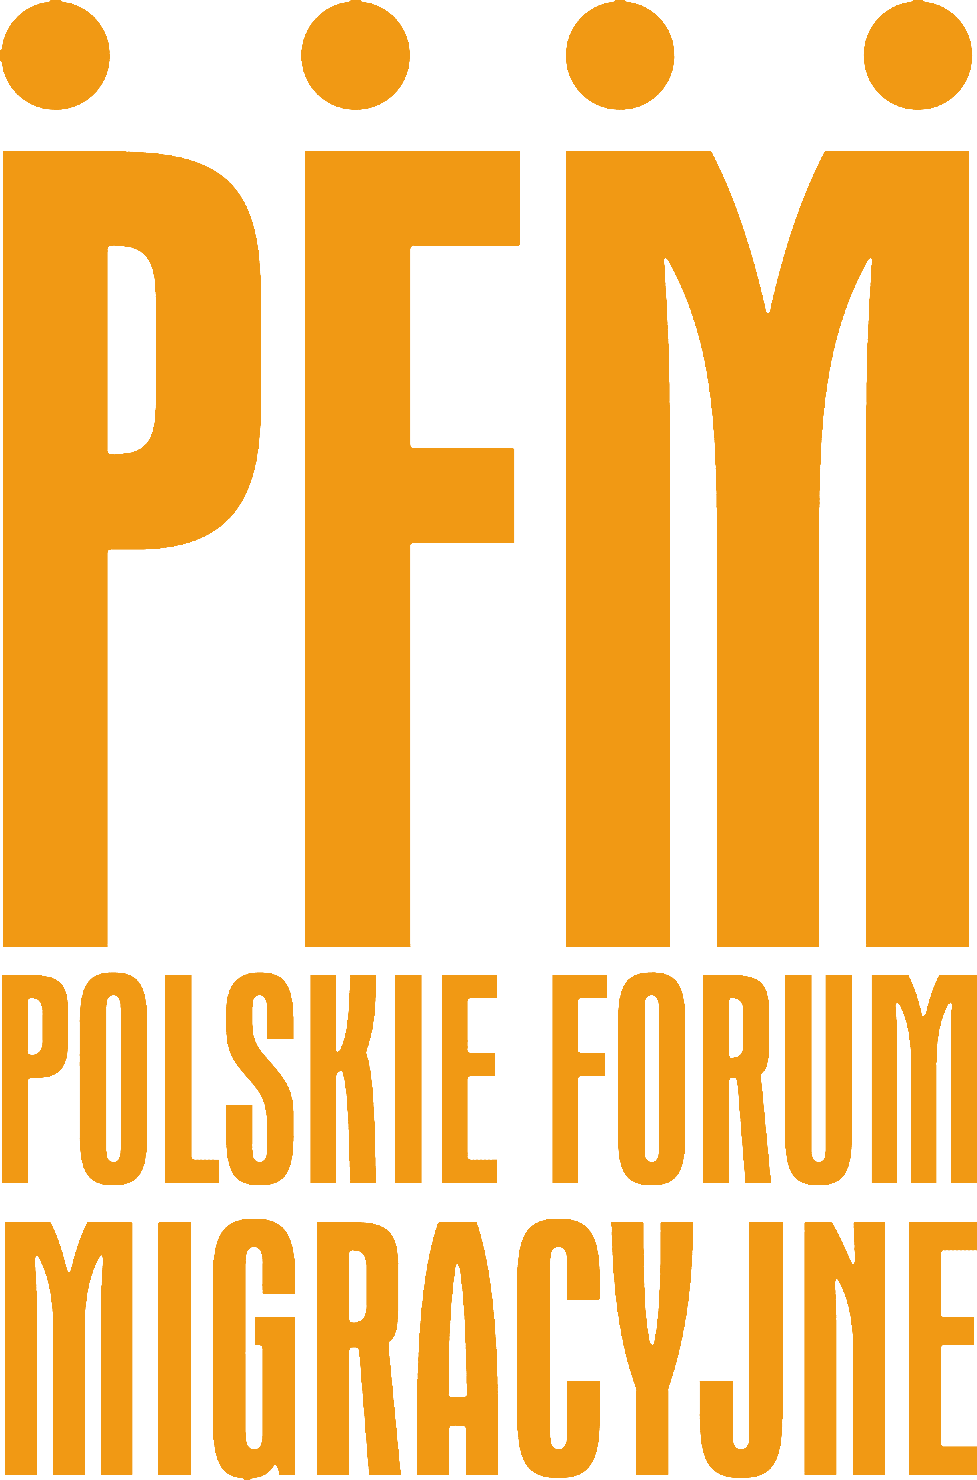 Polskie Forum Migracyjne